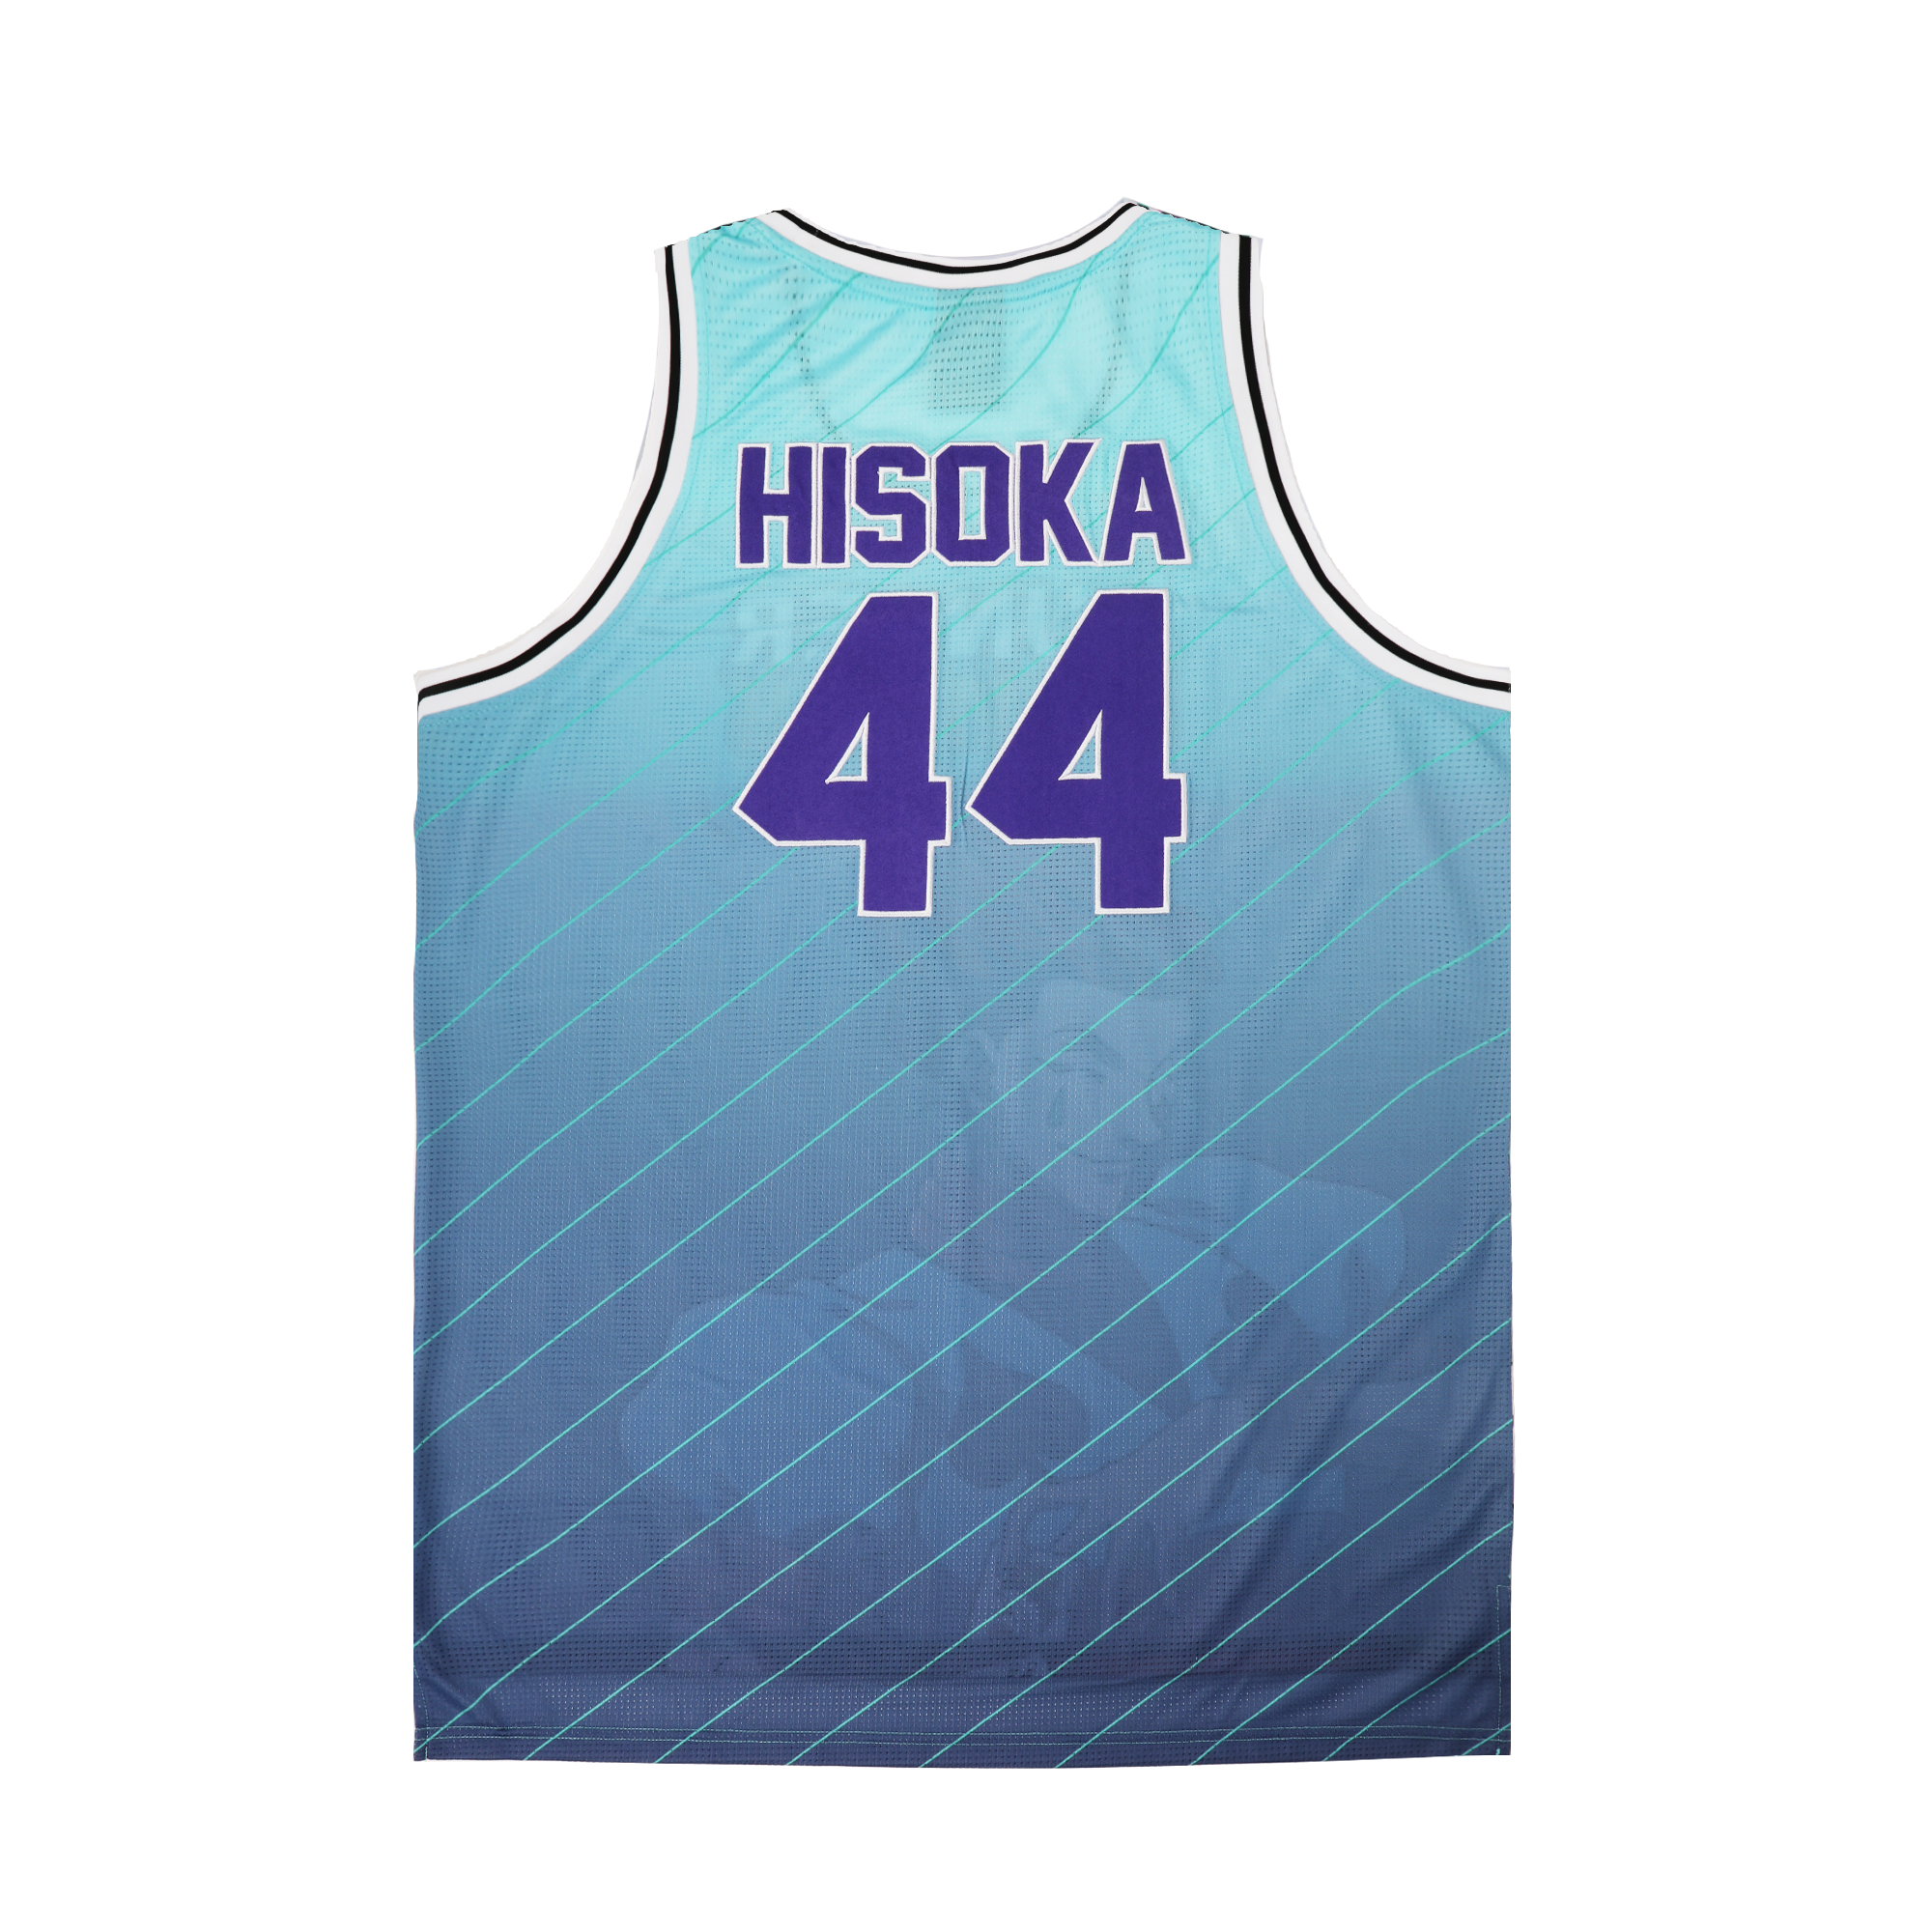 Hisoka Basketball Jersey